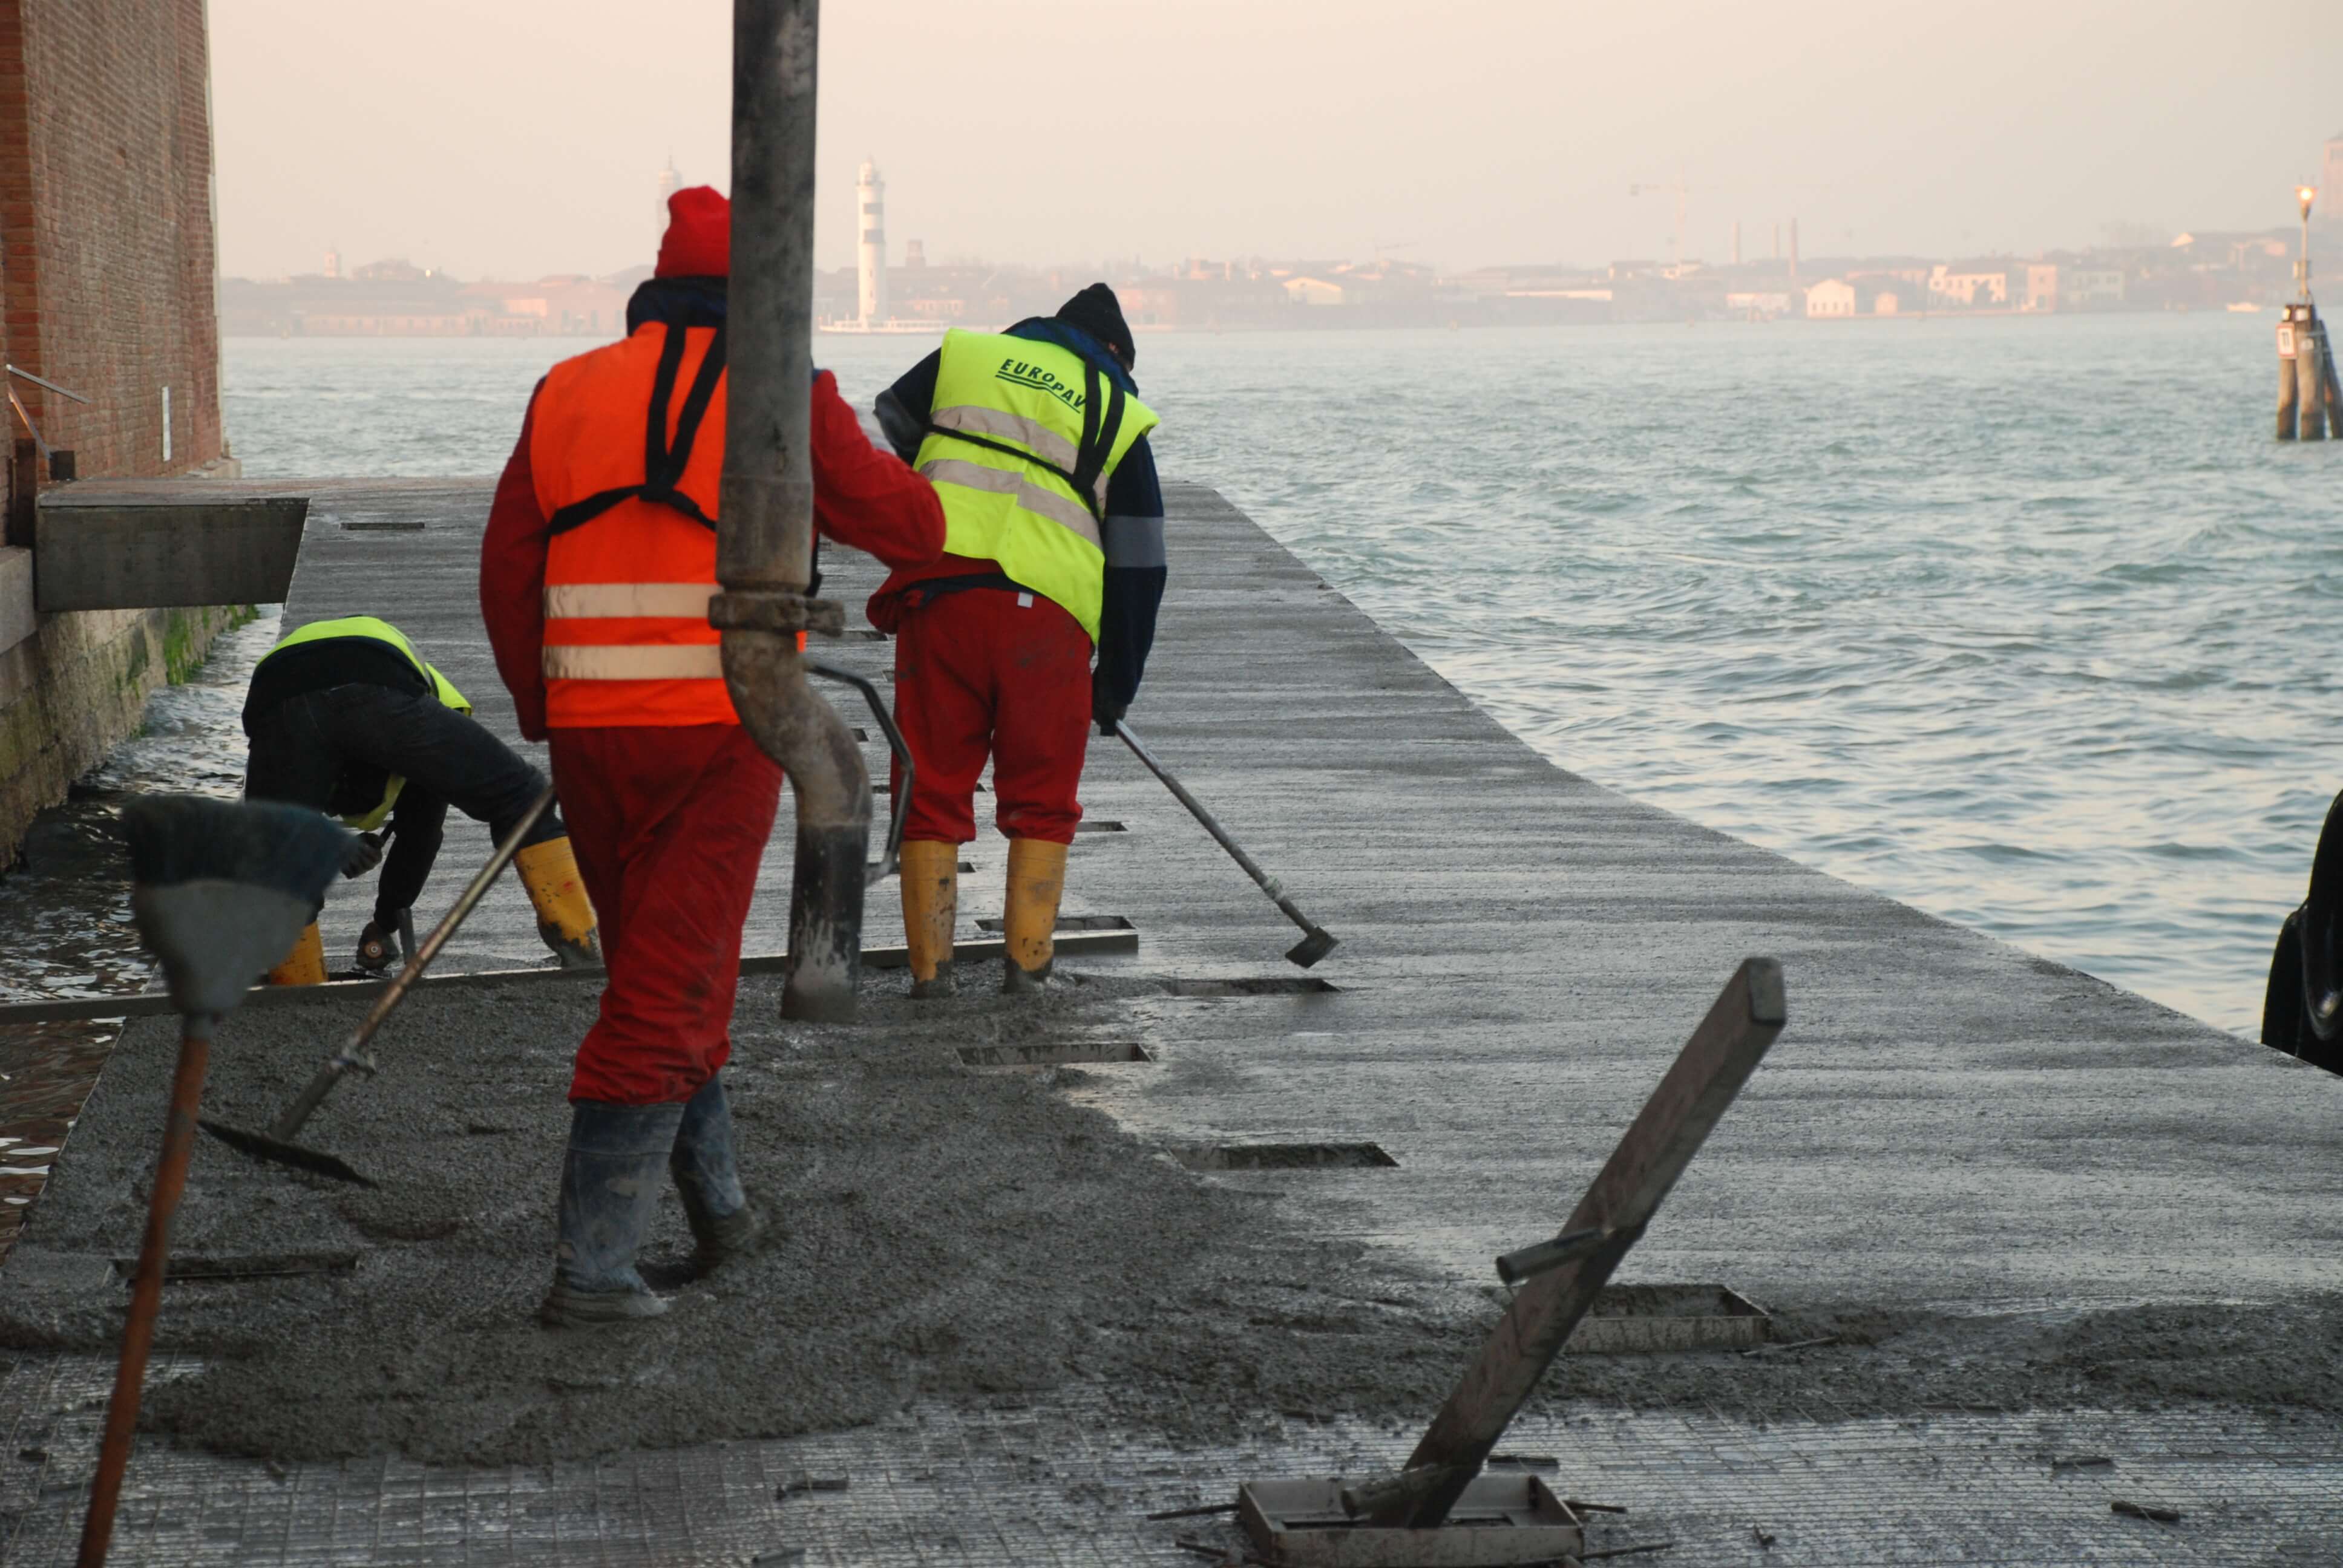 Ecobeton Bonding Agent usato in una banchina portuale a Venezia